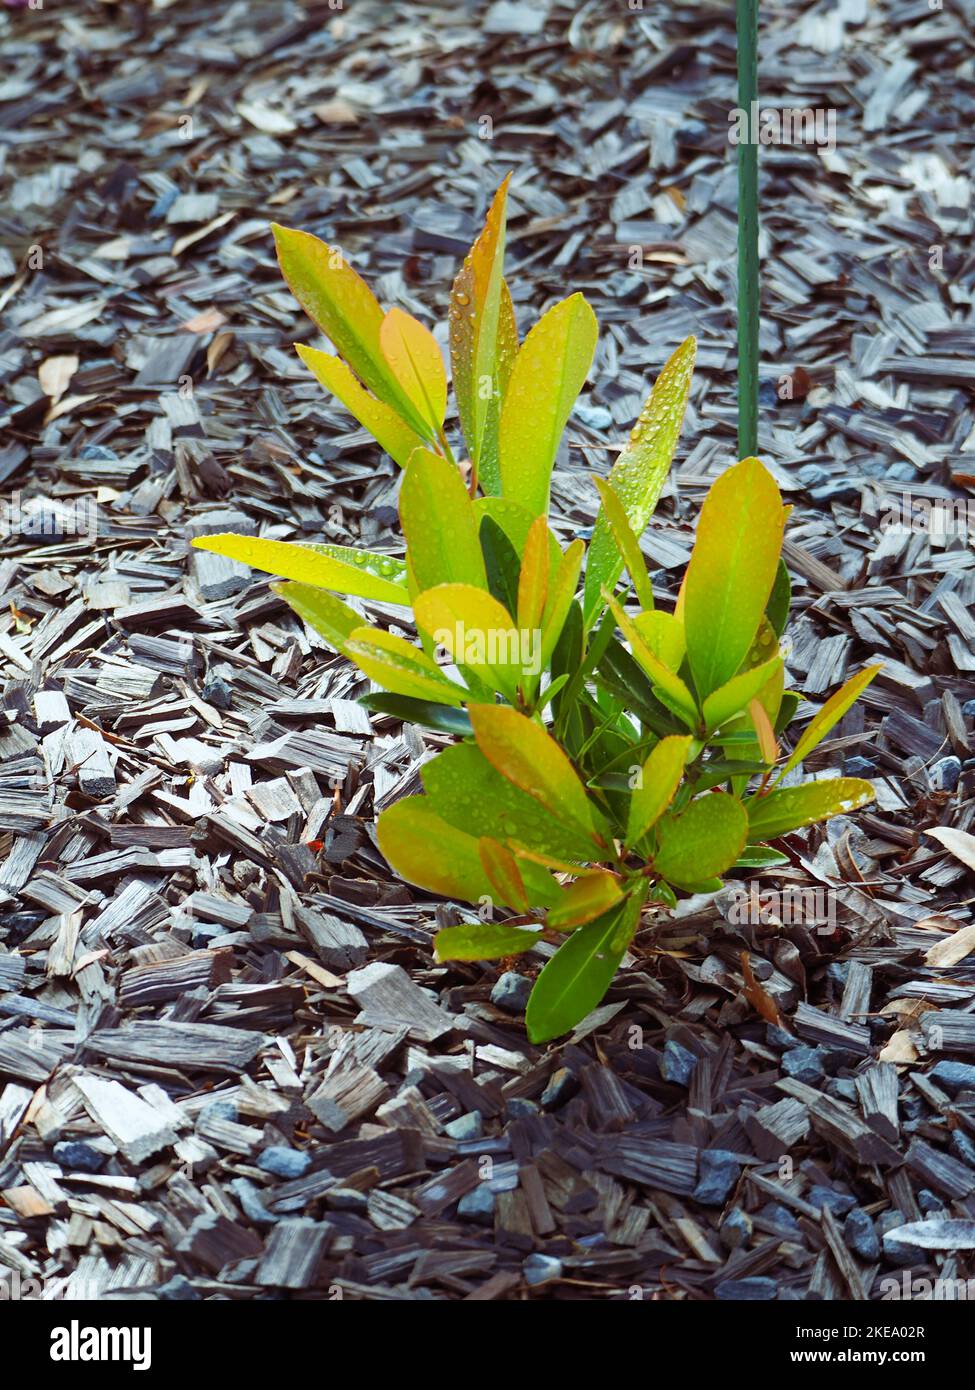 Australian coastal garden, a young Gordonia or Fried egg plant, Australia Stock Photo